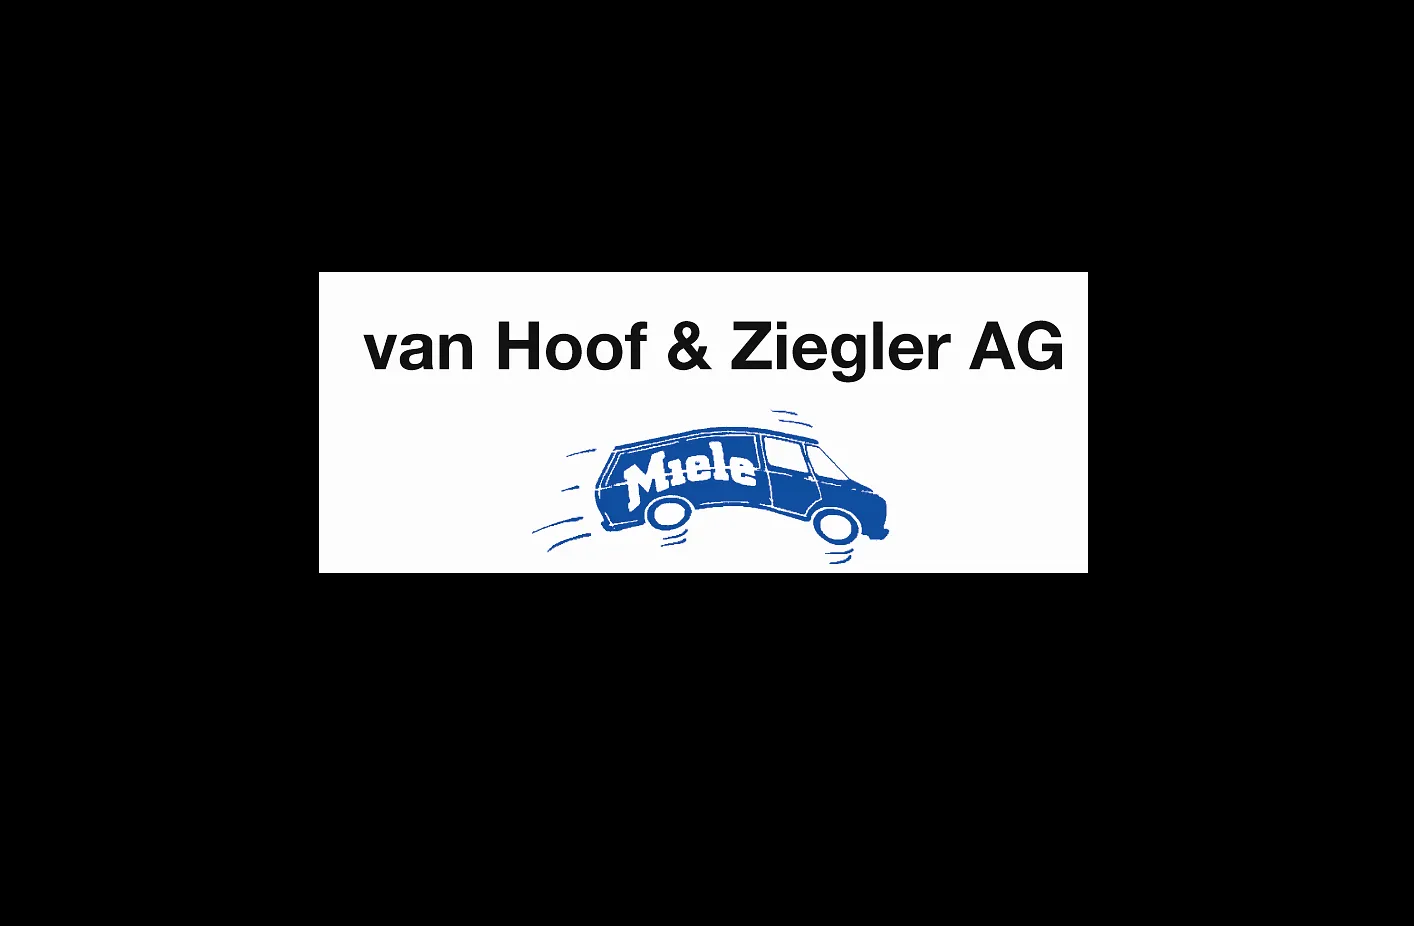 van Hoof & Ziegler AG